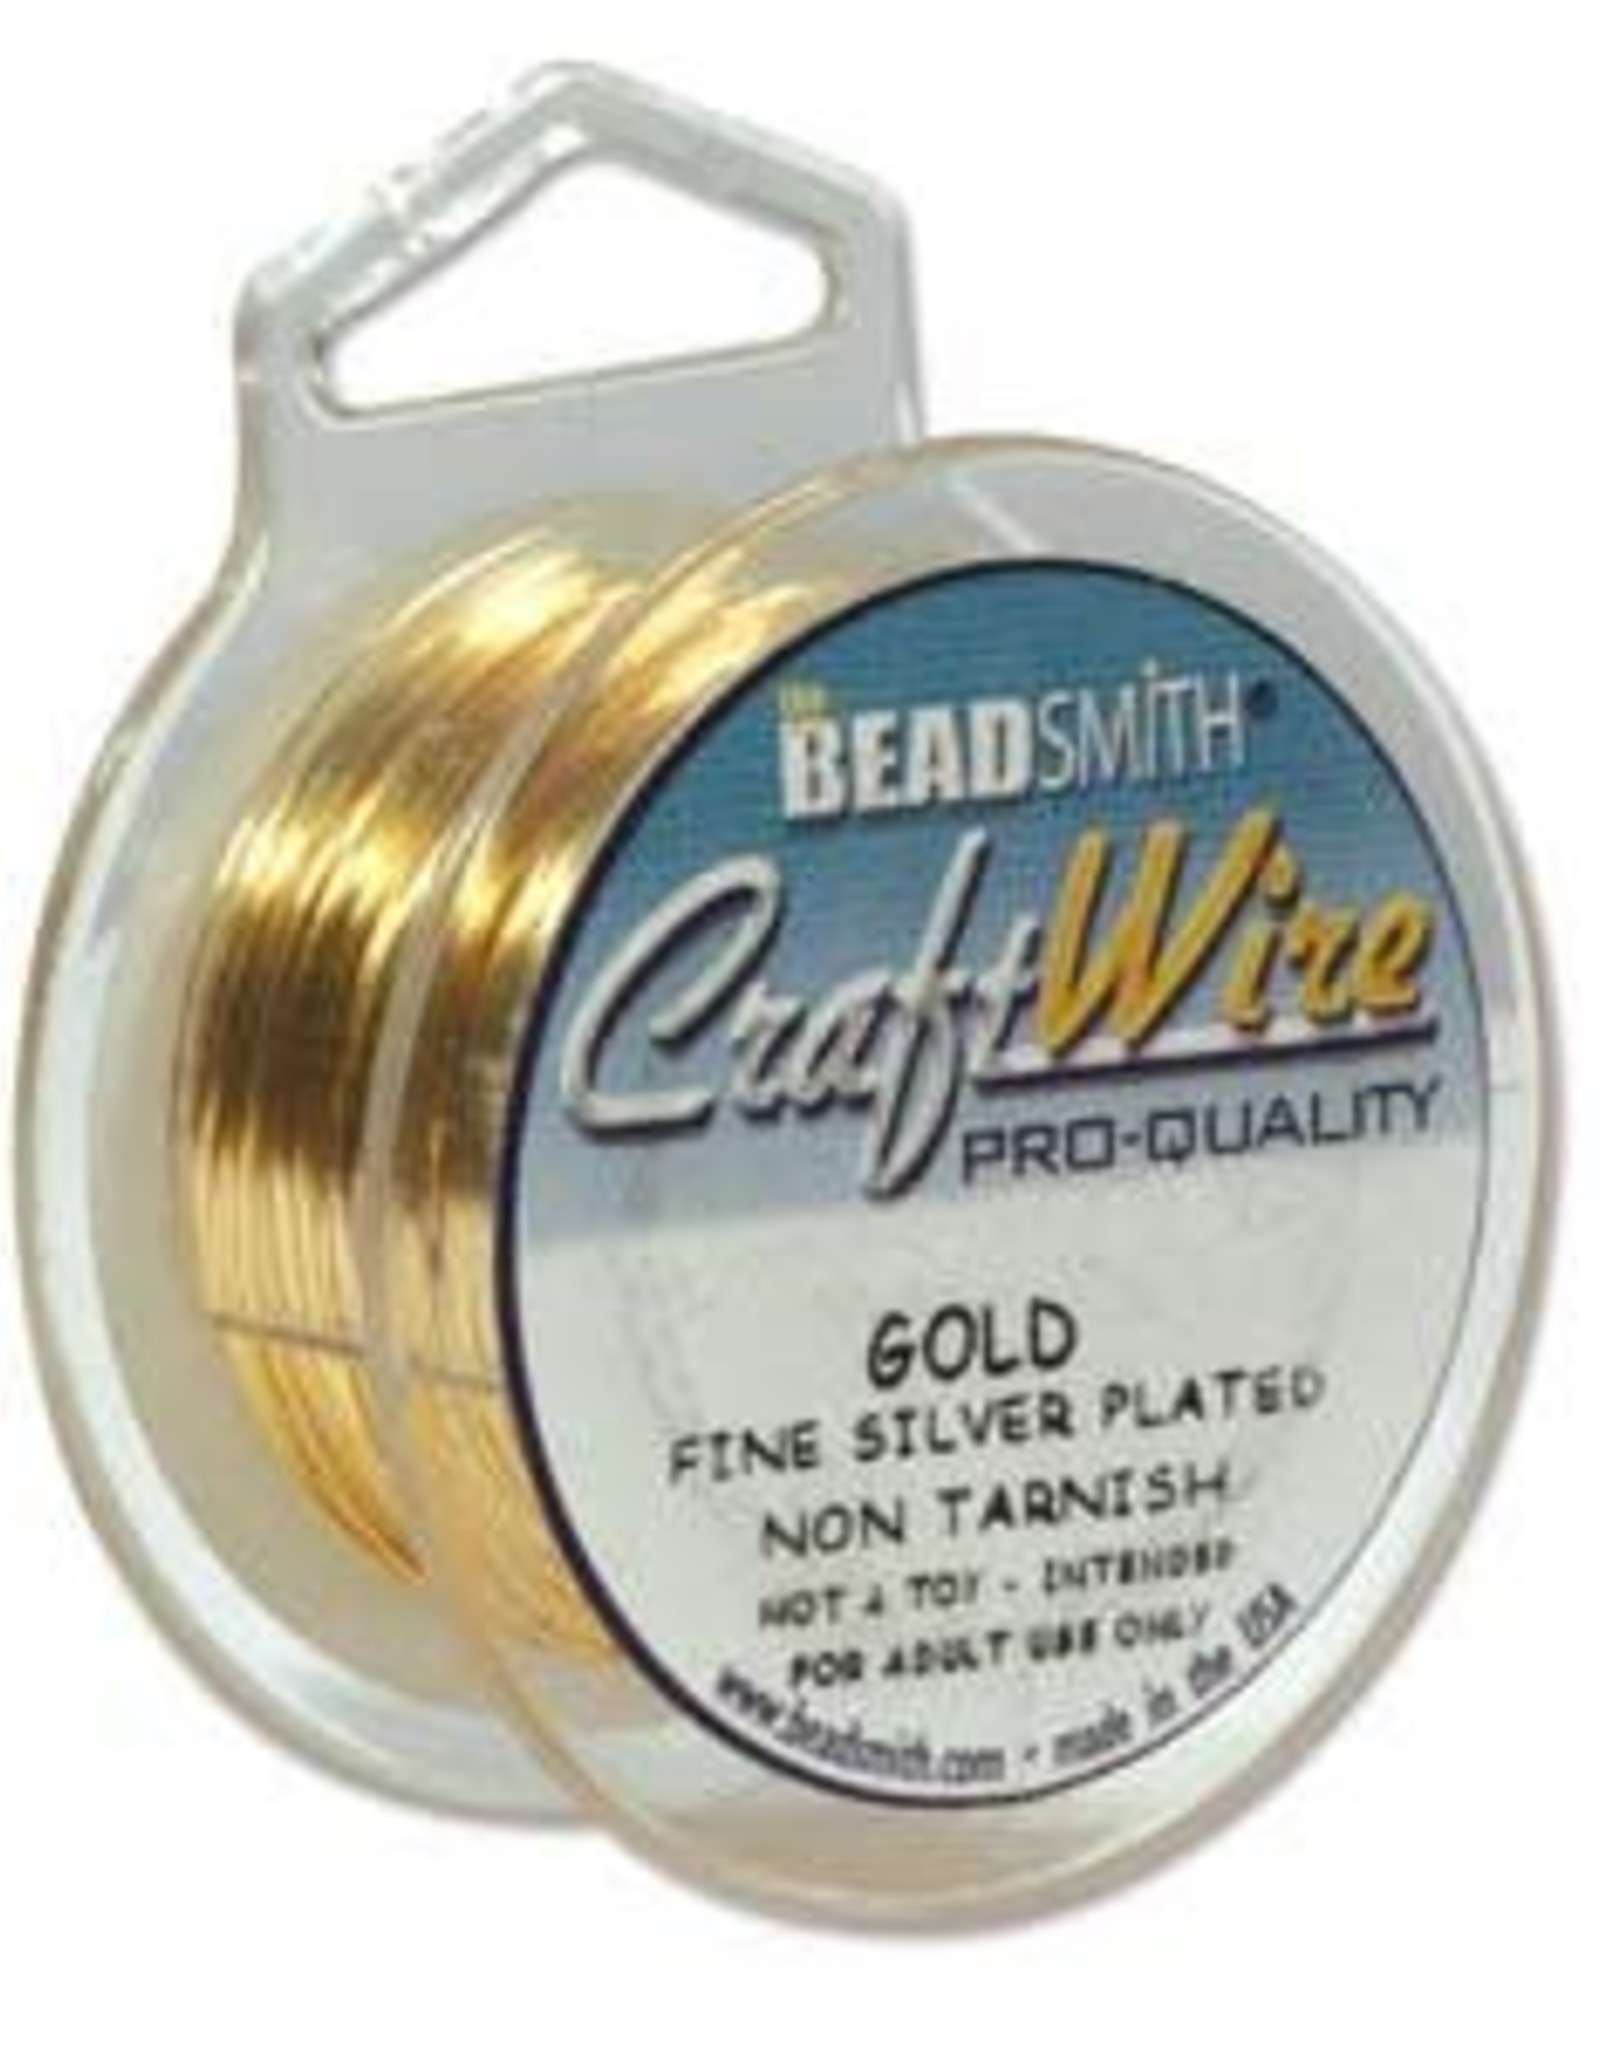 Craft Wire 18ga Round Gold Plate 4yds